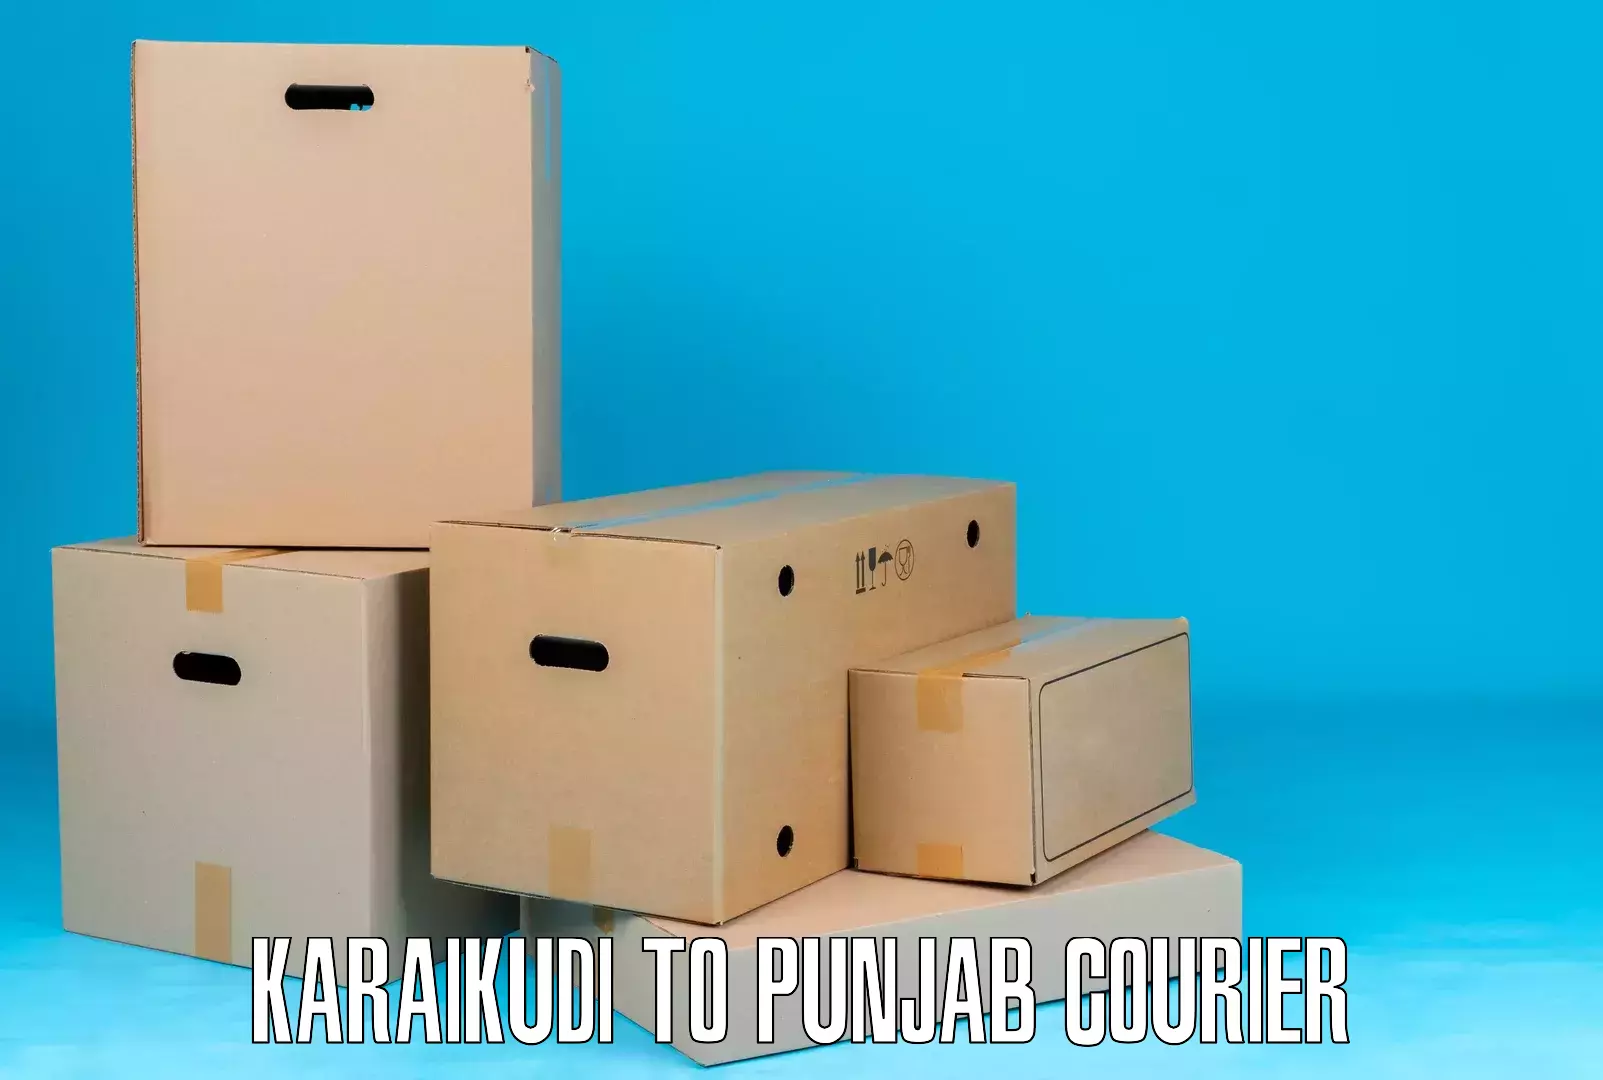 Global shipping solutions Karaikudi to Malerkotla